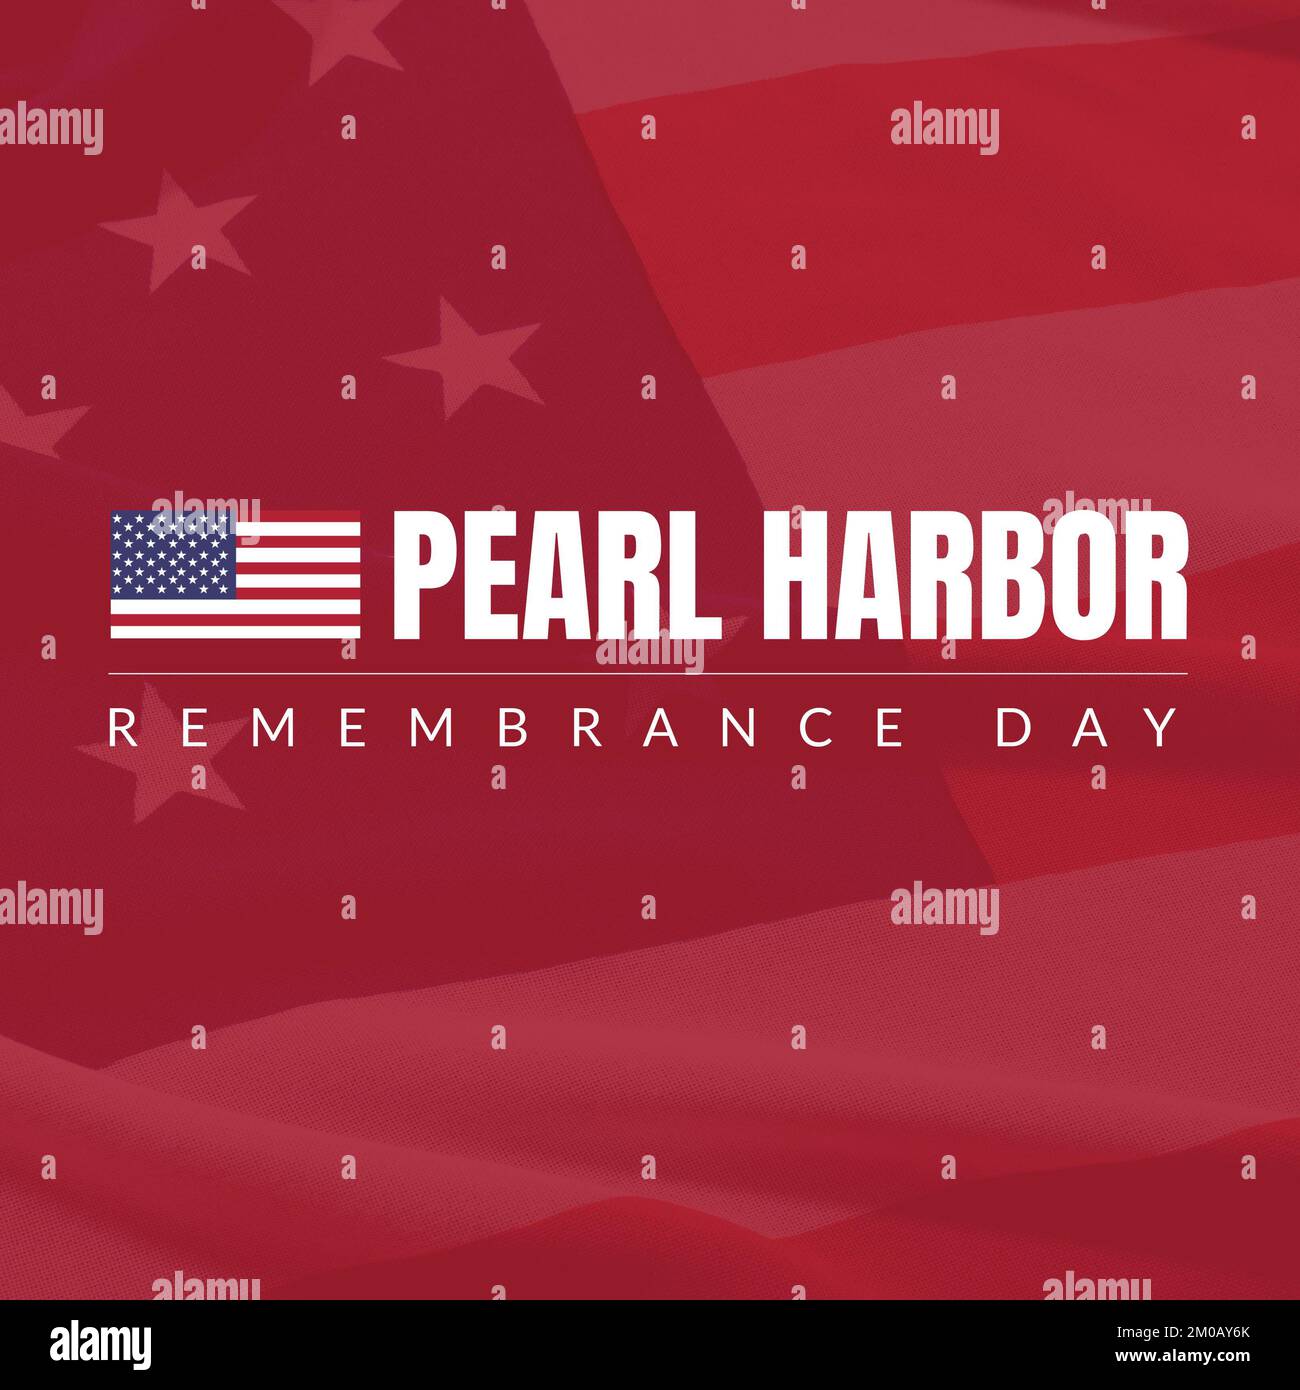 Ilustración de la bandera de américa y el texto del día del recuerdo del puerto de perlas sobre el patrón rojo Foto de stock